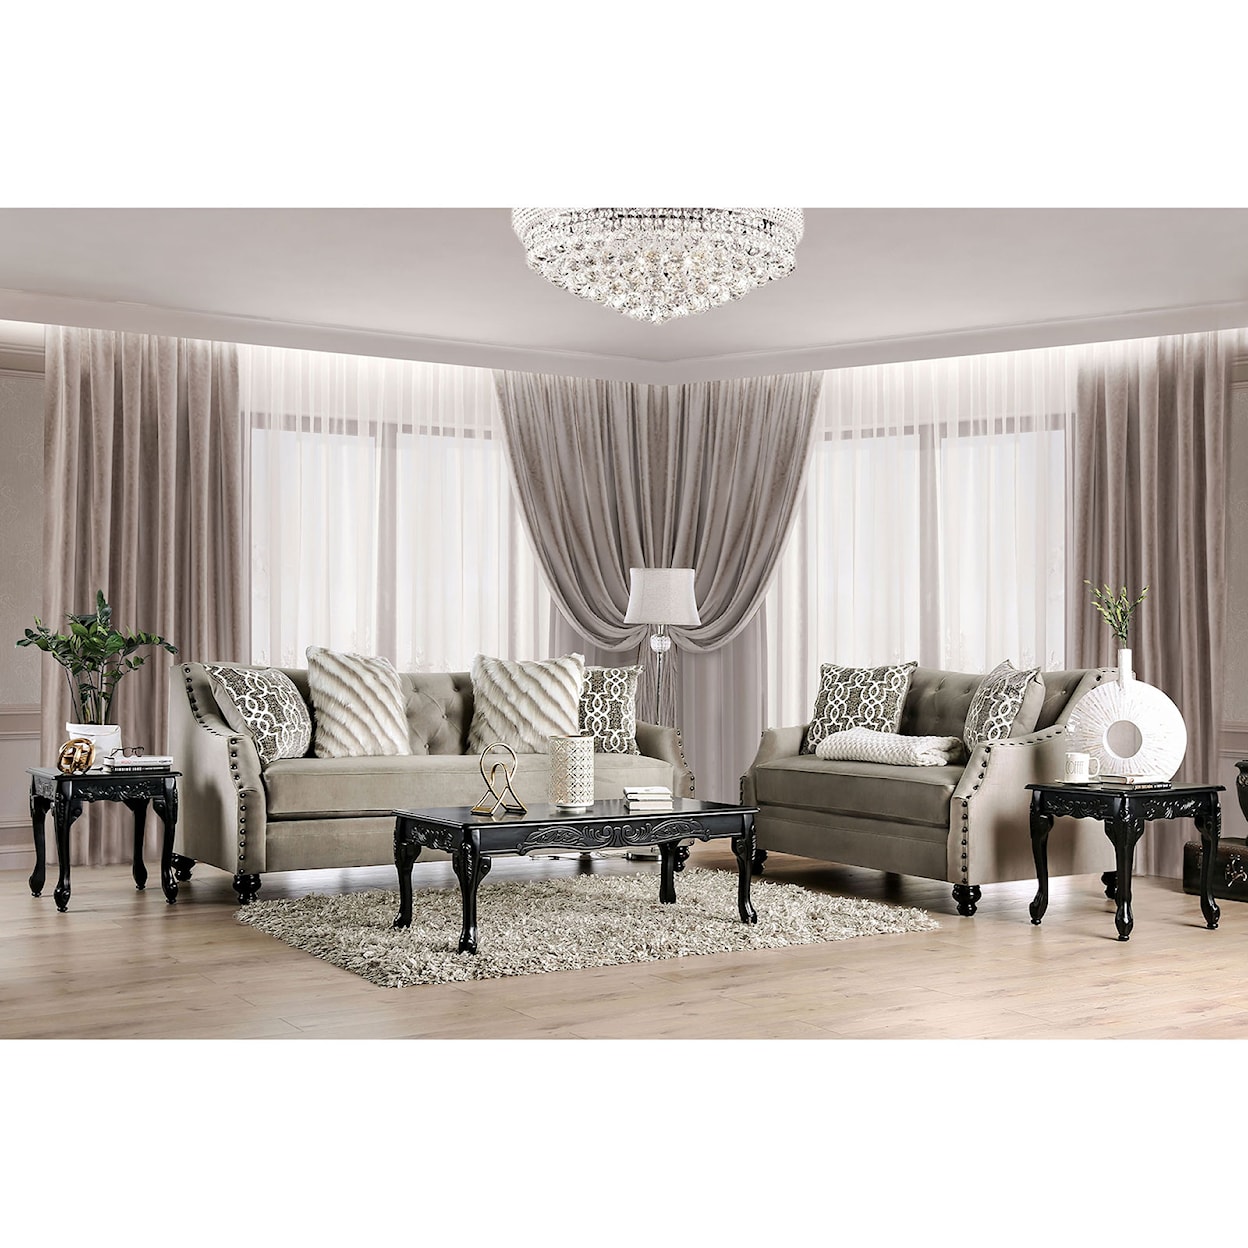 Furniture of America Ezrin Sofa